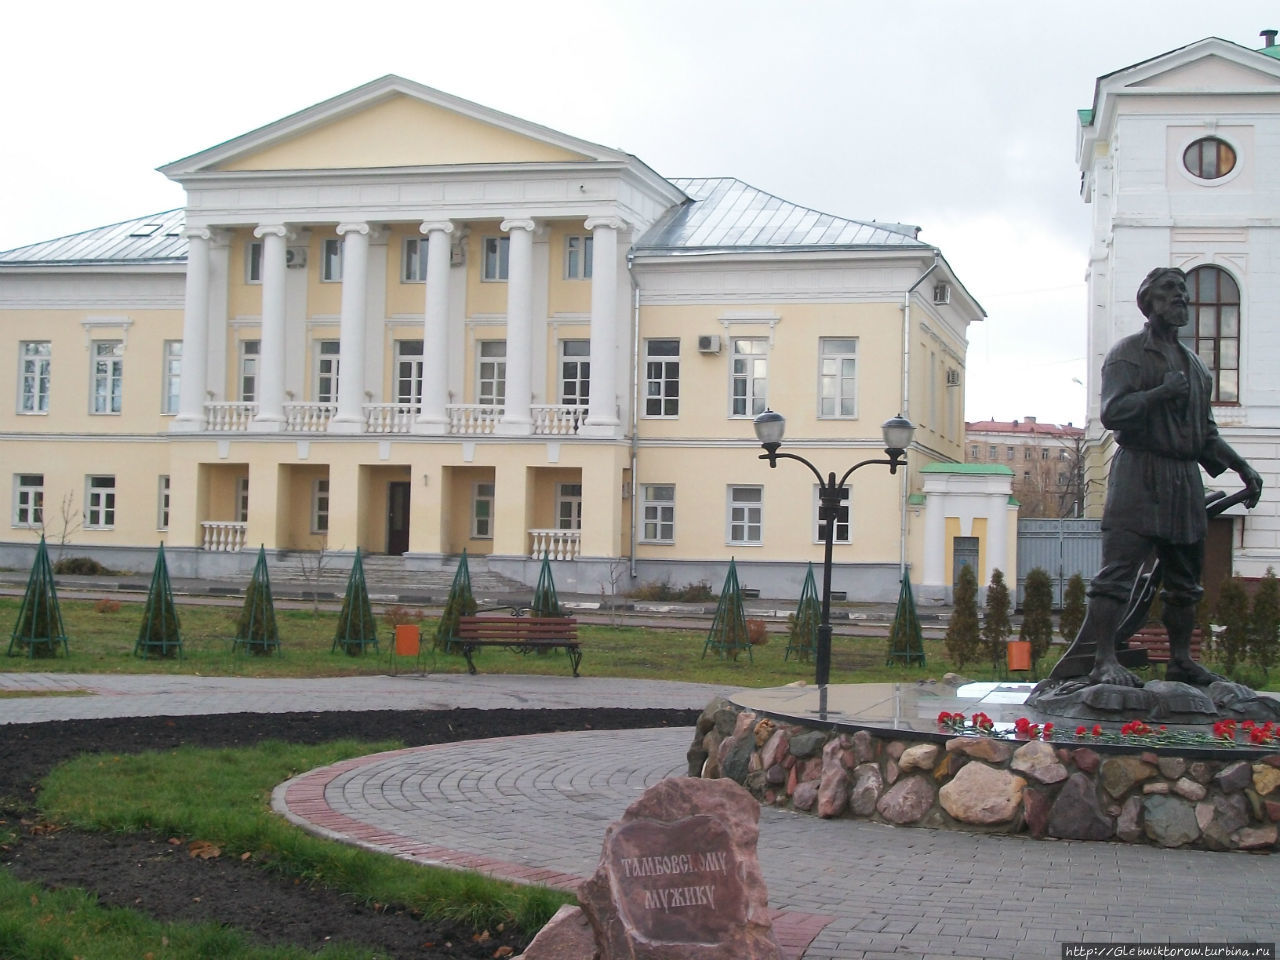 Памятник Тамбовскому Мужику Тамбов, Россия